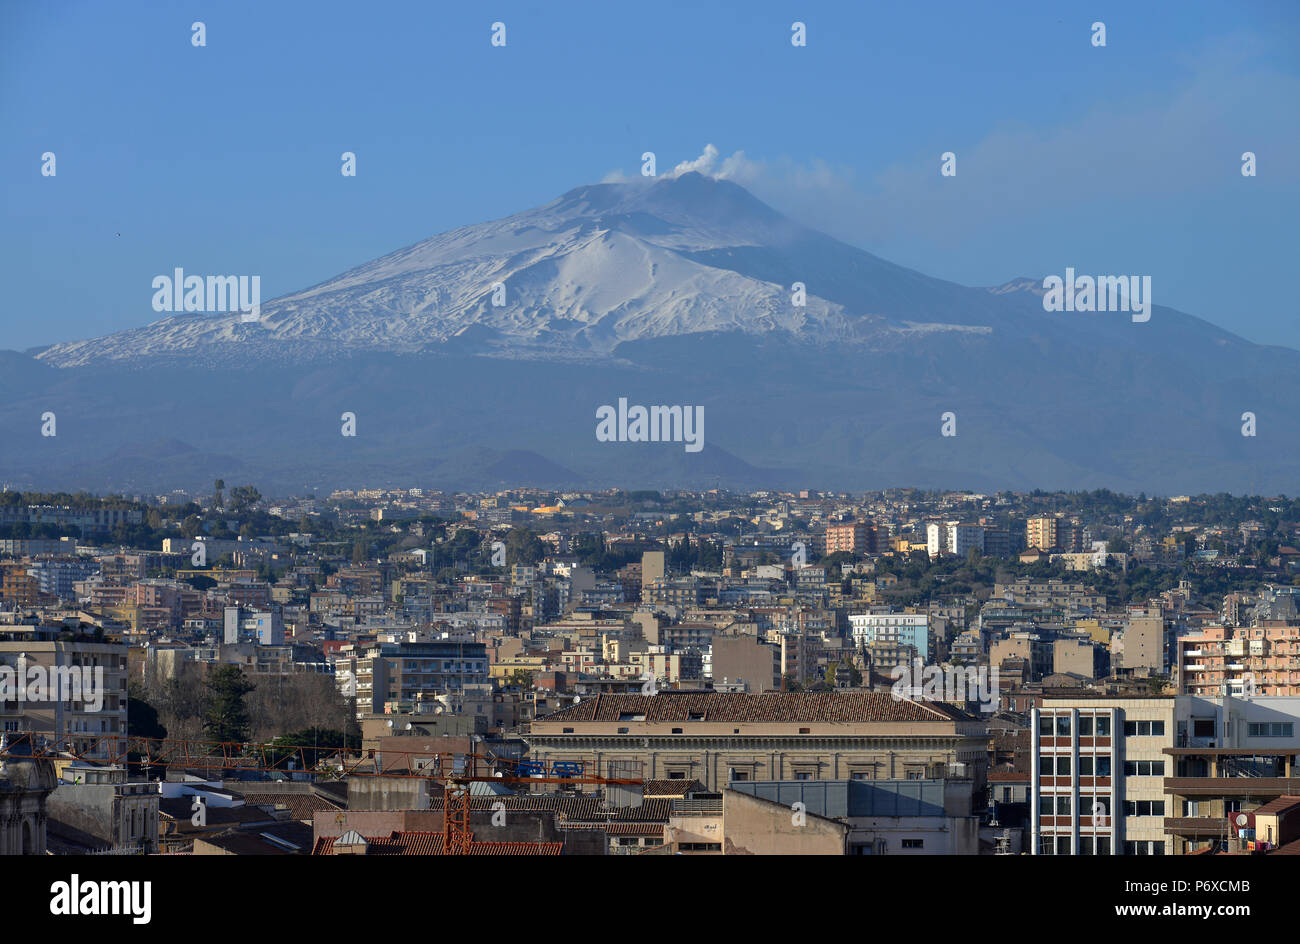 Vulkan, l'Etna, Catane, Sicile, Italie Banque D'Images